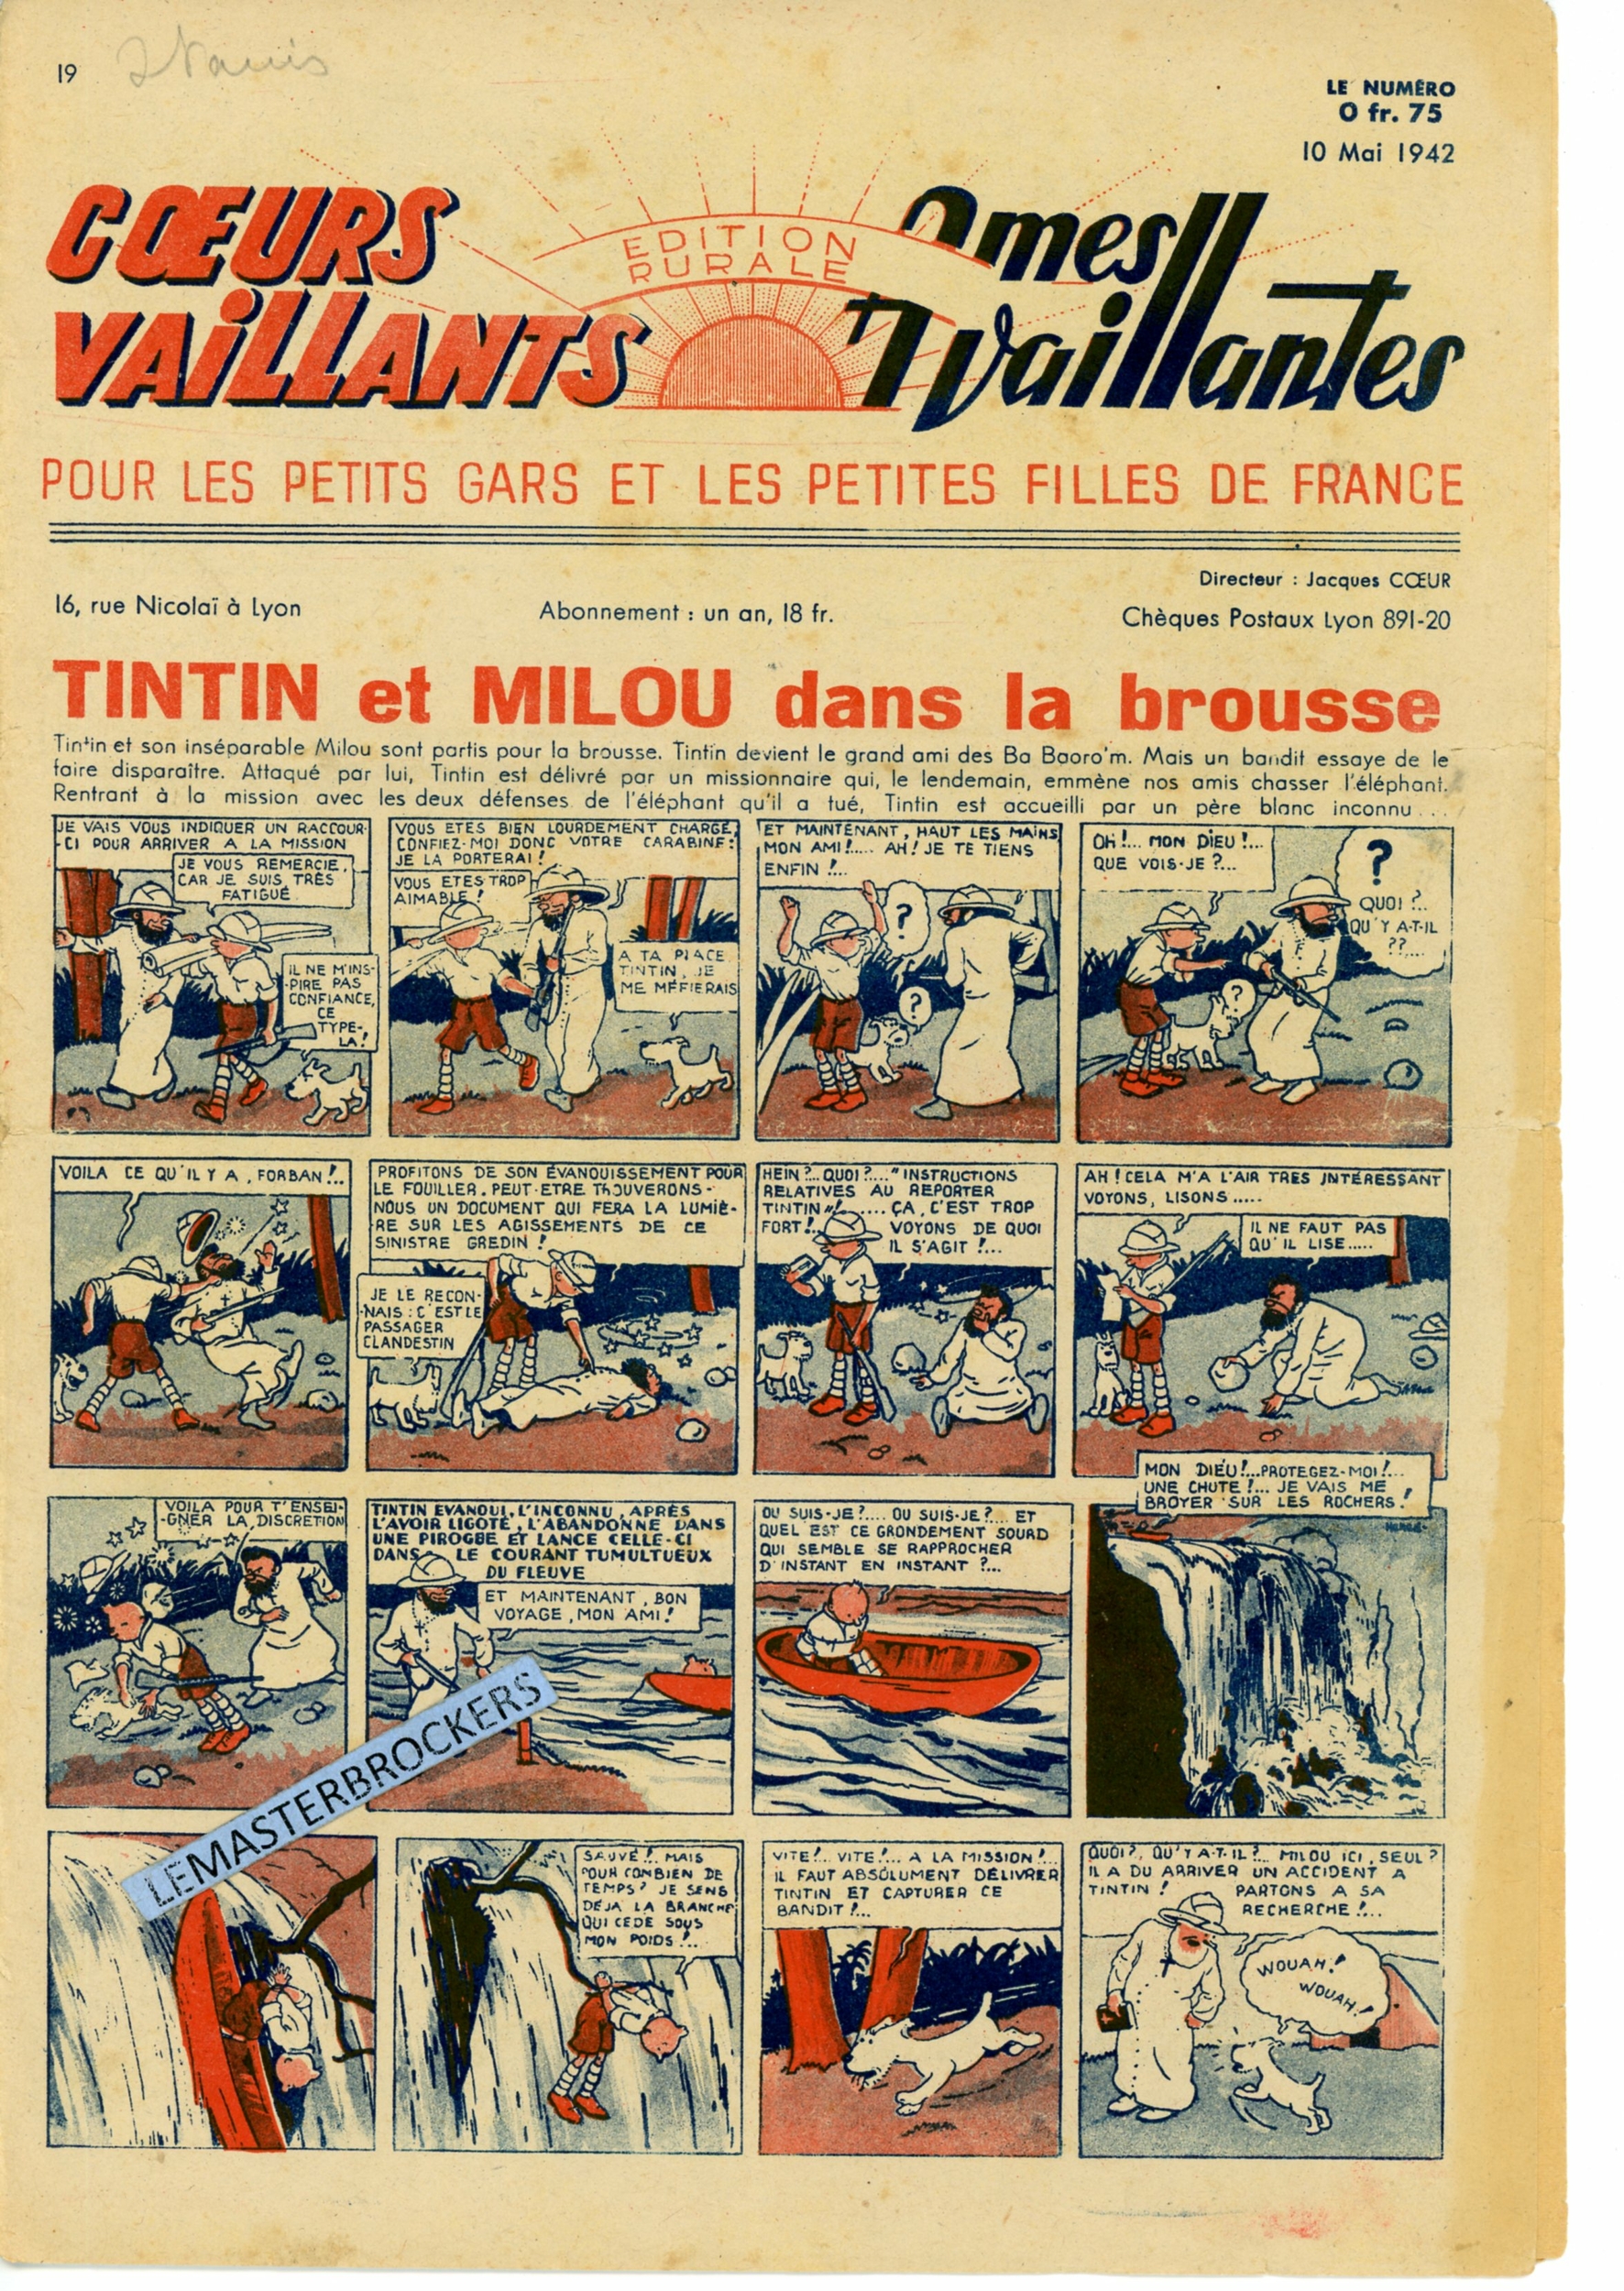 TINTIN ET MILOU DANS LA BROUSSE - COEURS VAILLANTS N° 19 - SUPPLÉMENT BIMENSUEL 10 MAI 1942